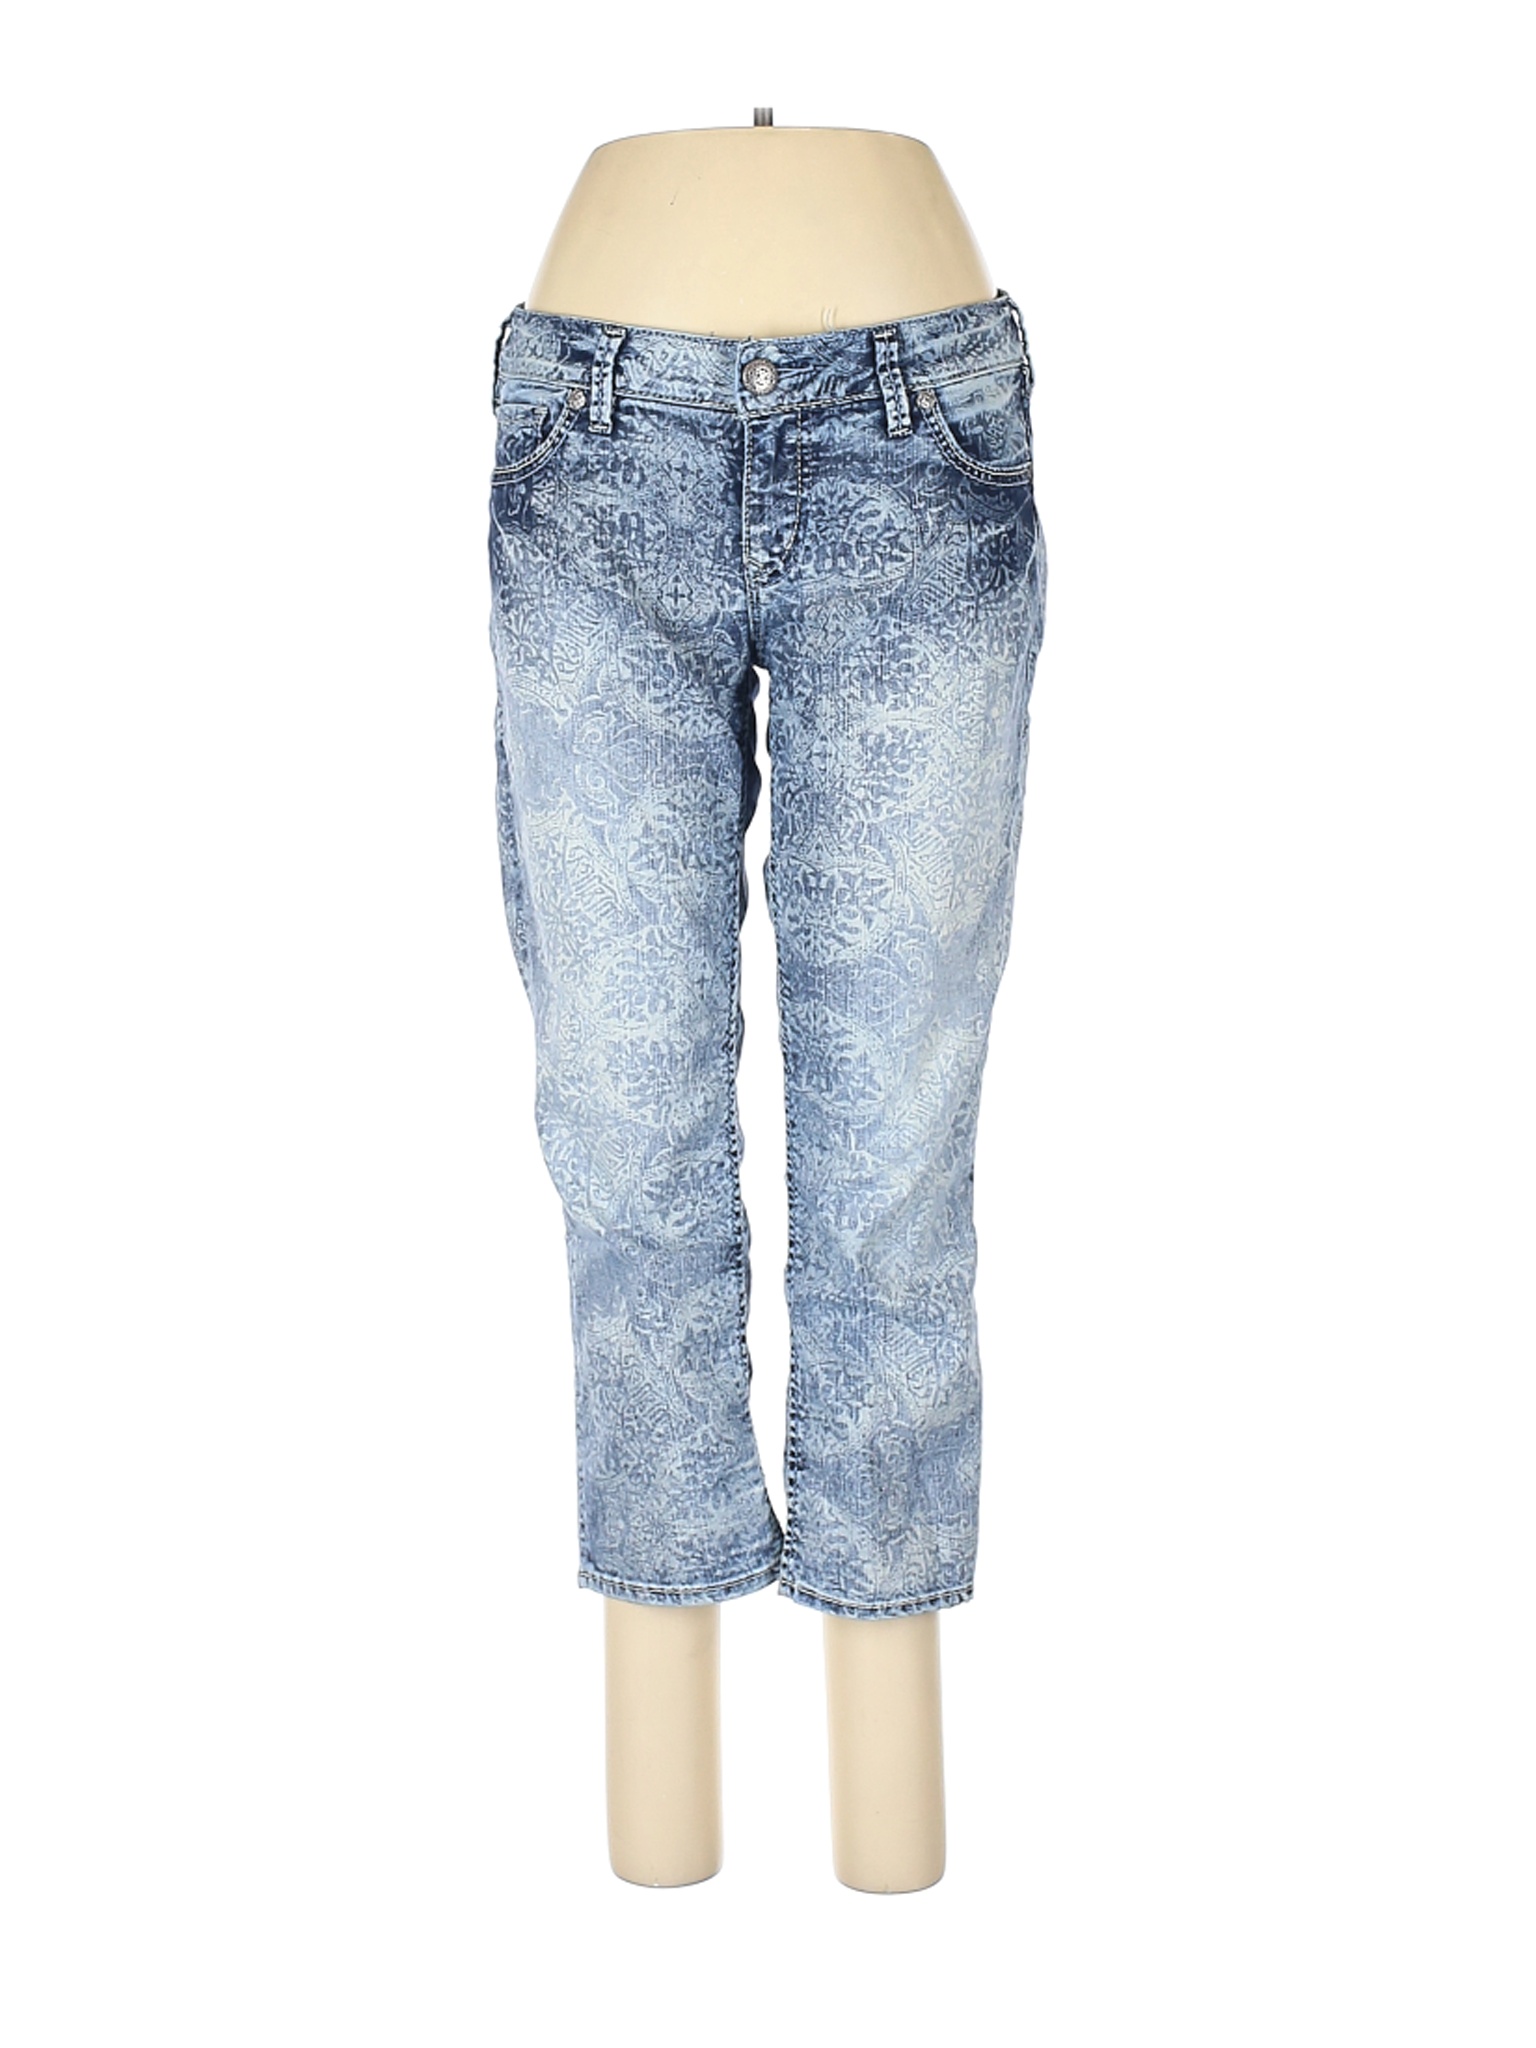 Silver Jeans Co. Women Blue Jeans 31W | eBay